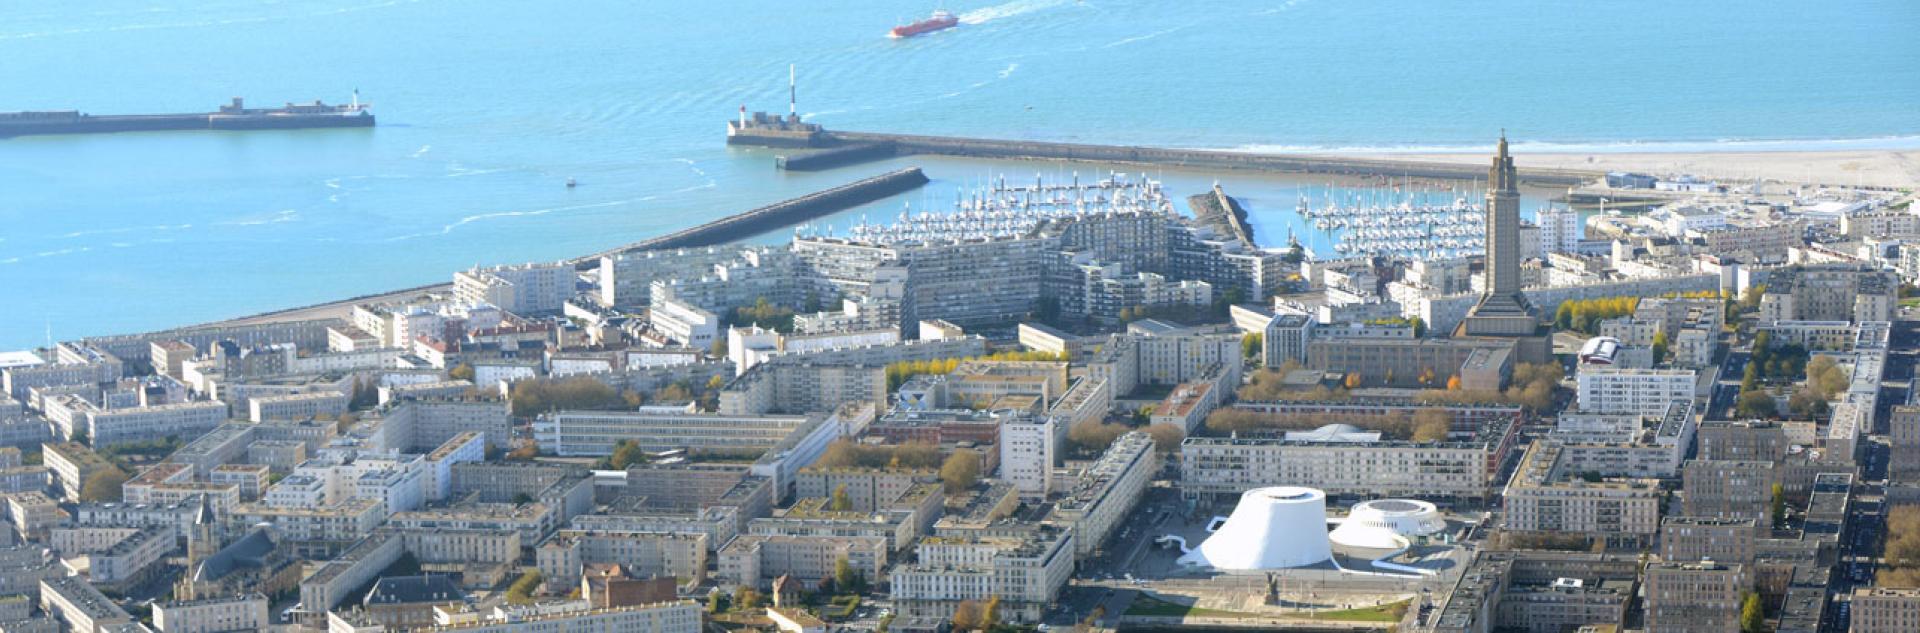 Vue aérienne du centre-ville, Le Havre